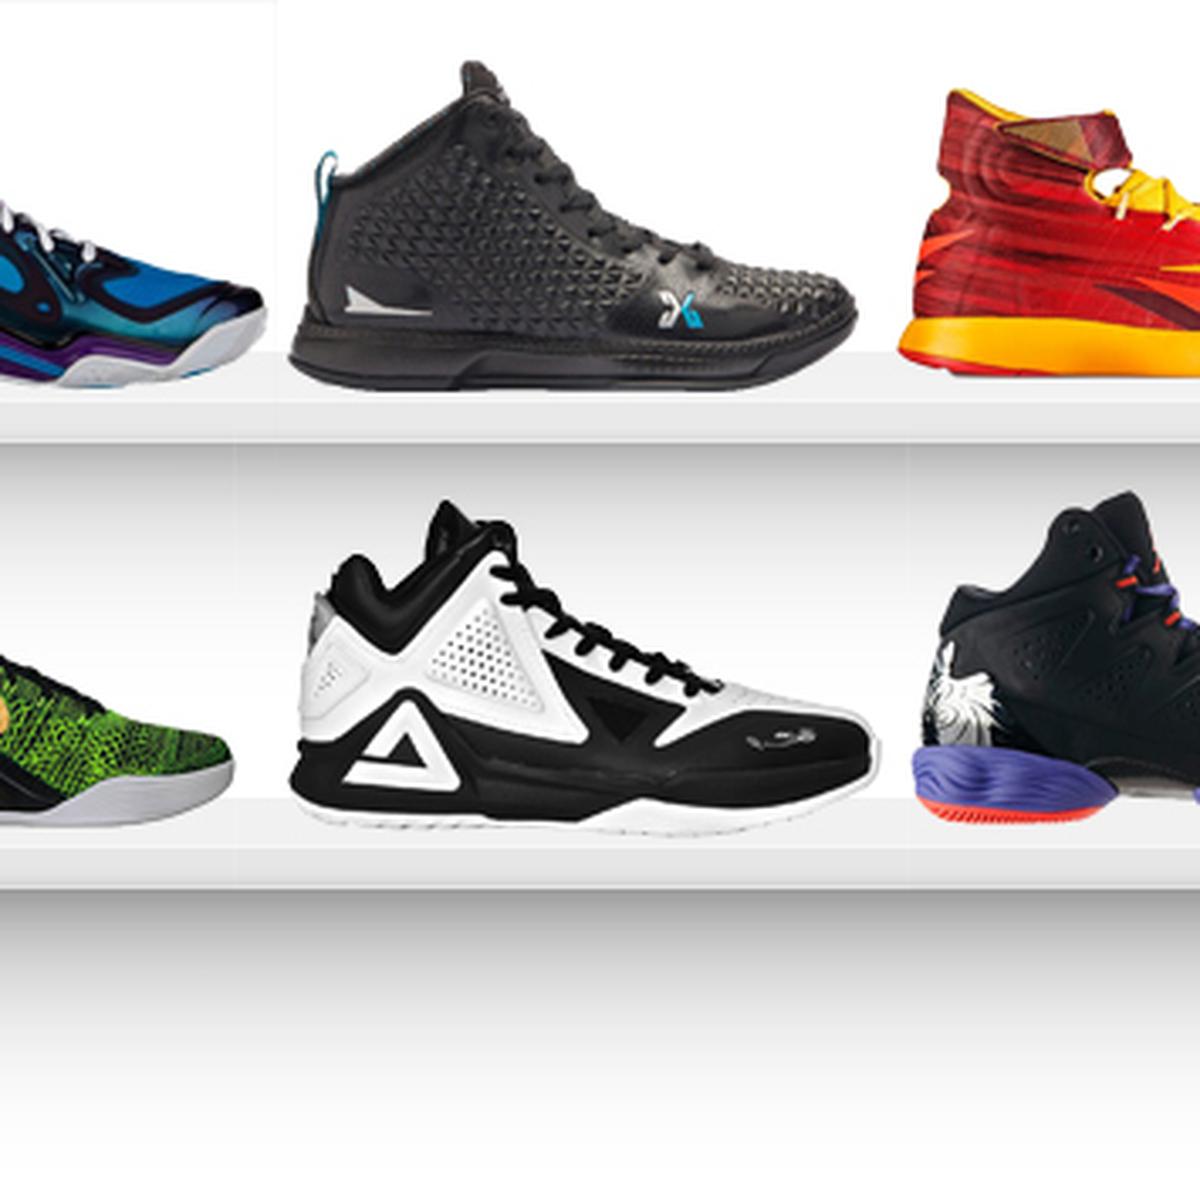 Estas diez zapatillas de básquet tienen el mejor de 2014 TENDENCIAS GESTIÓN